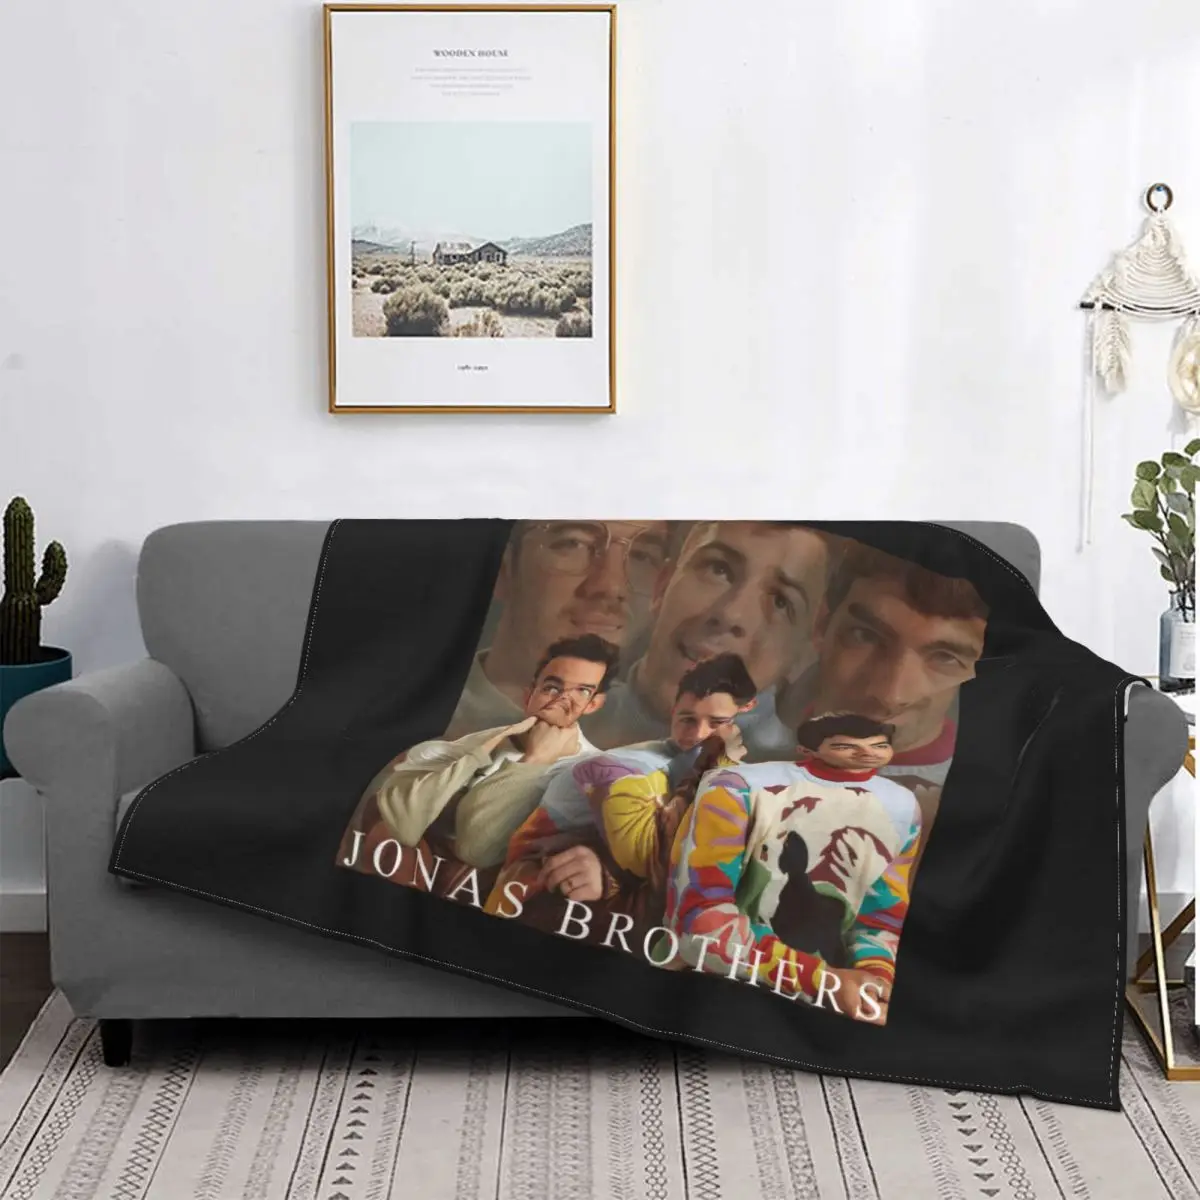 

Плюшевое одеяло с логотипом Jonas Brothers Happiness Start Tour, удобное постельное белье в новом стиле, домашнее украшение